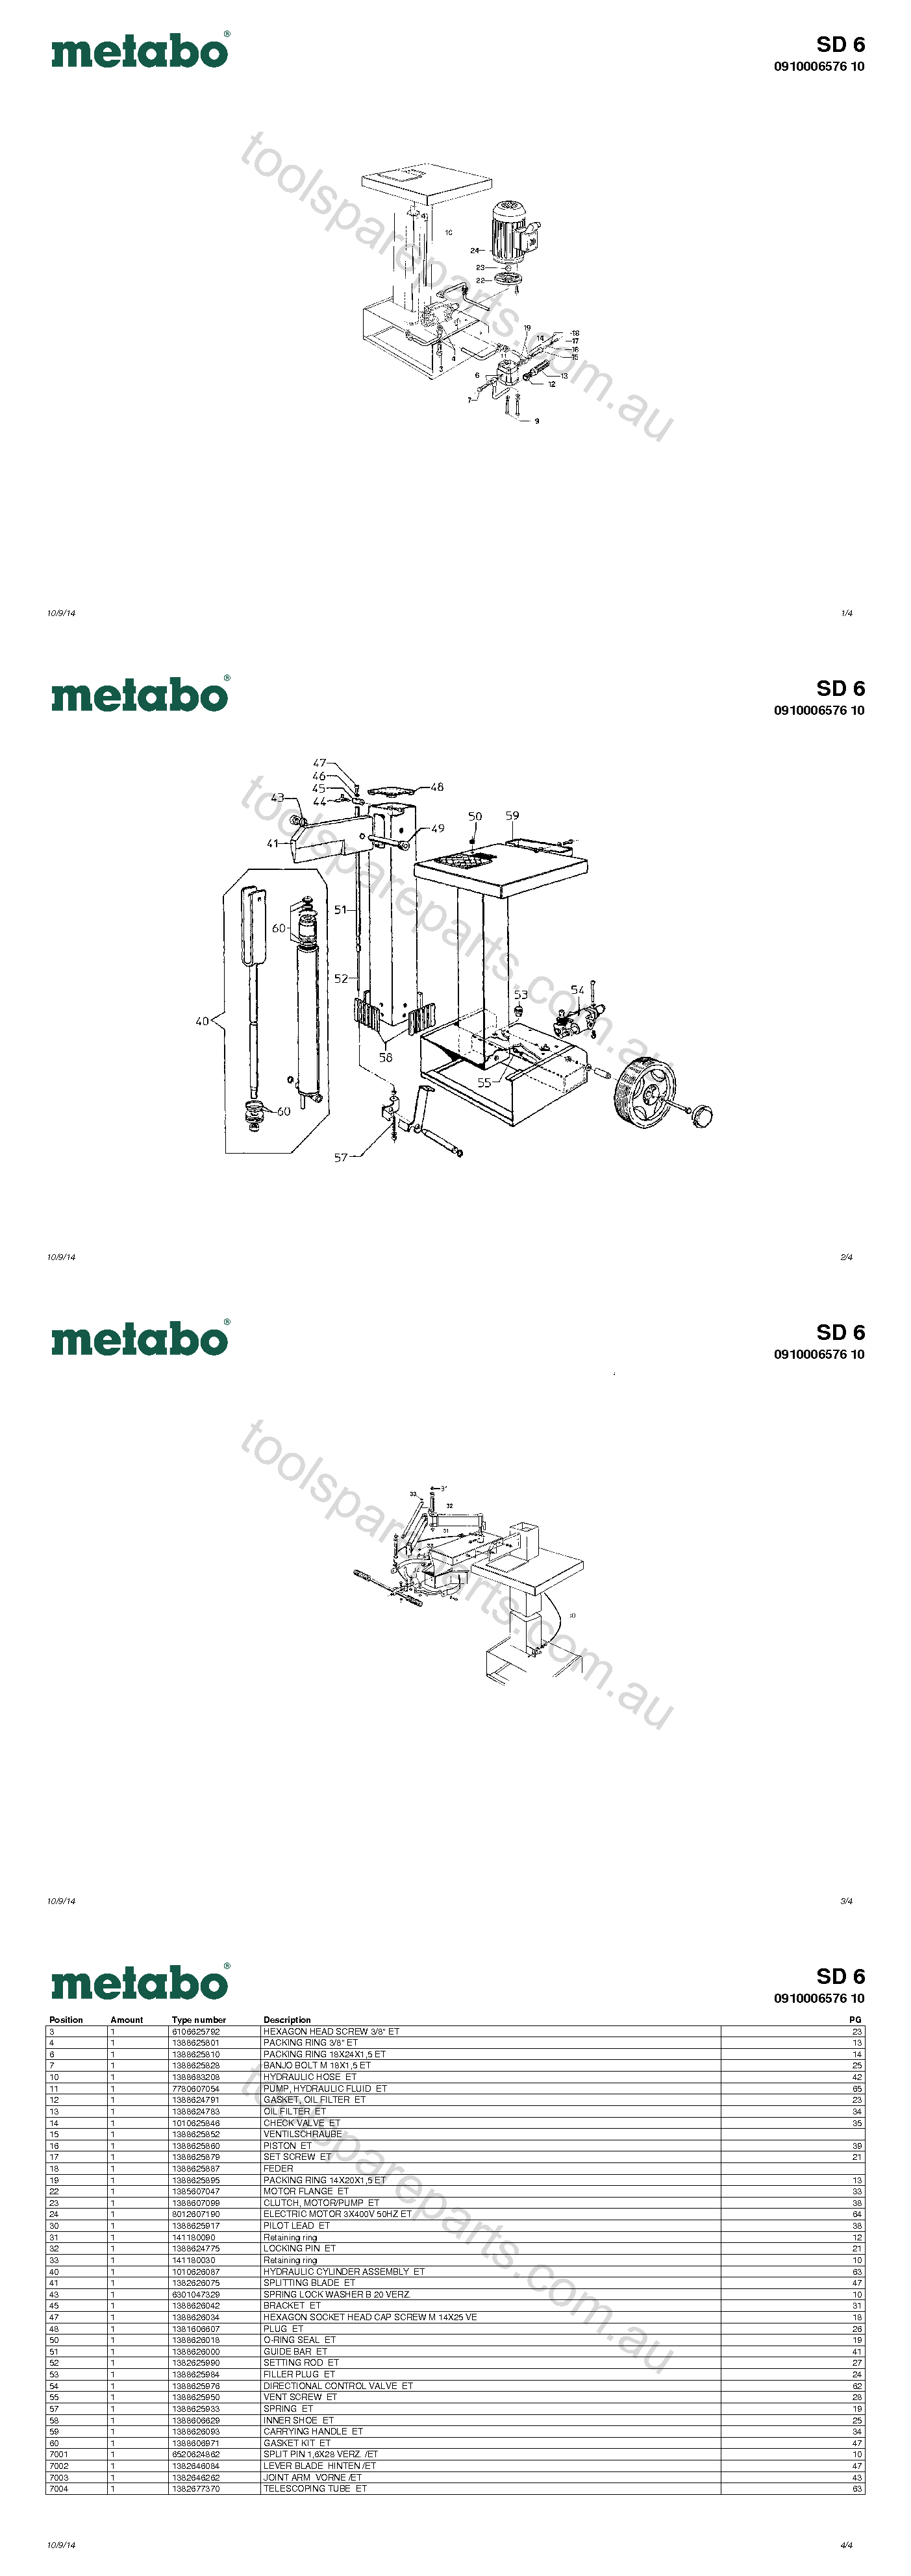 Metabo SD 6 0910006576 10  Diagram 1